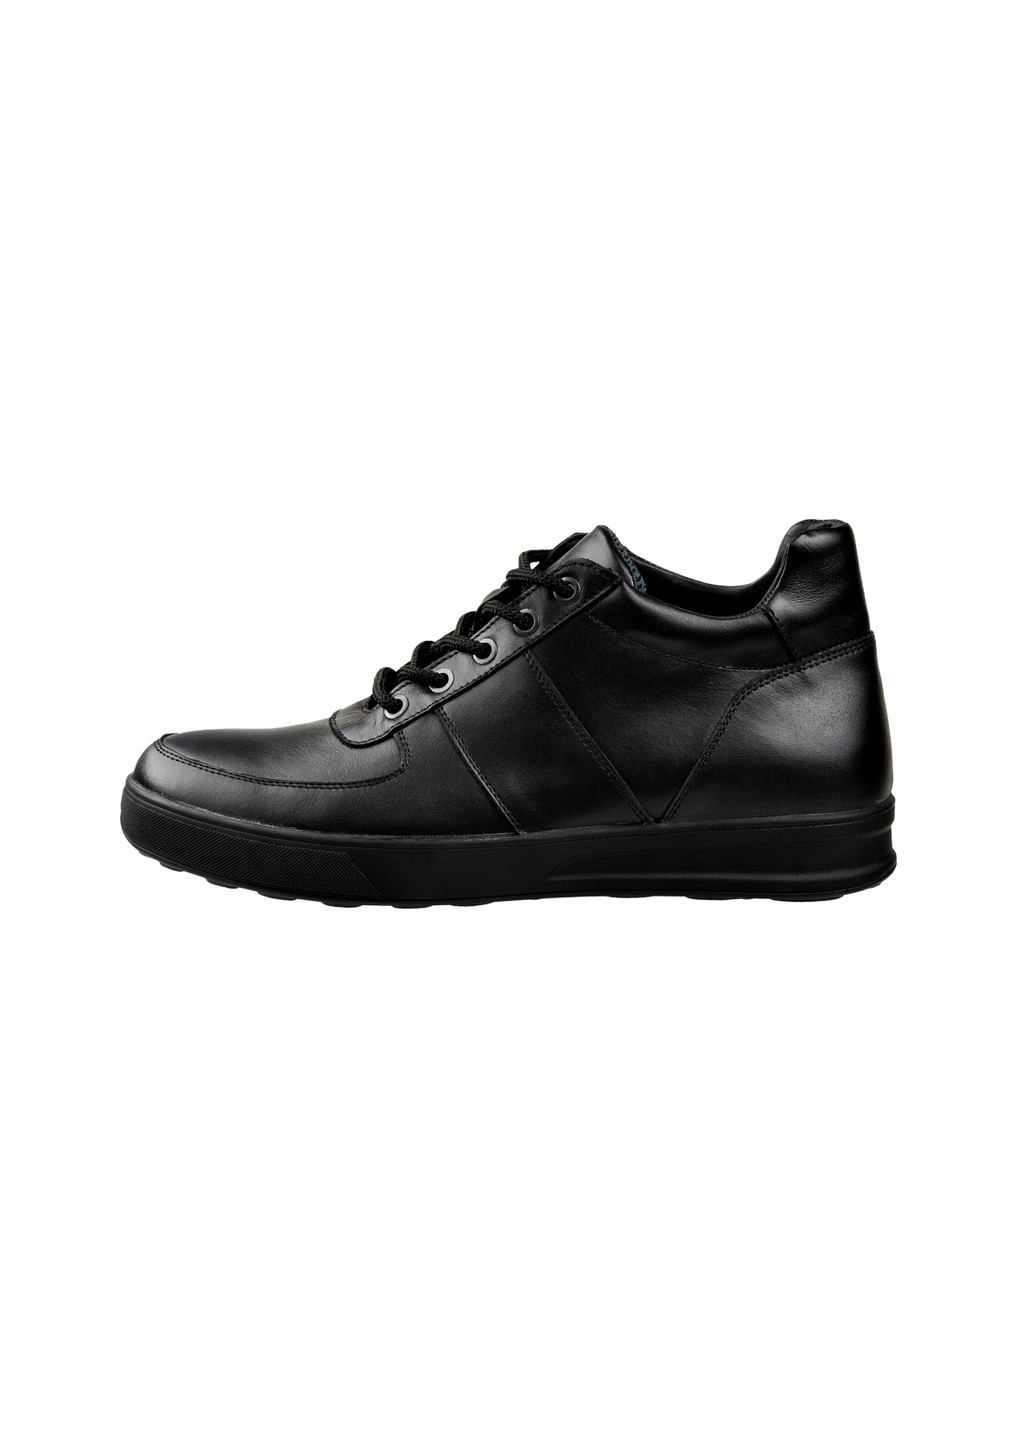 Черные зимние ботинки 121-501т Леомода